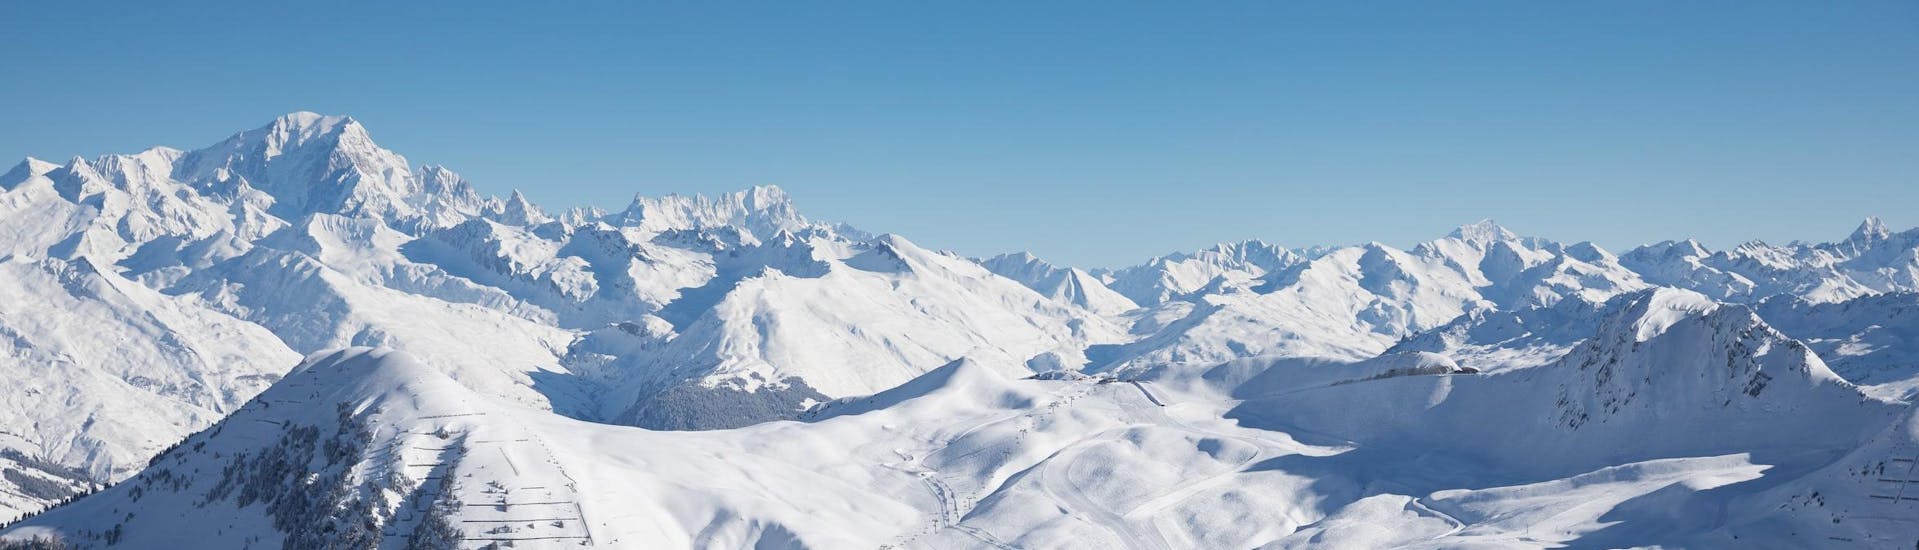 Vue sur les montagnes enneigées de la station de ski de La Plagne où l'école de ski dispense des cours de ski.